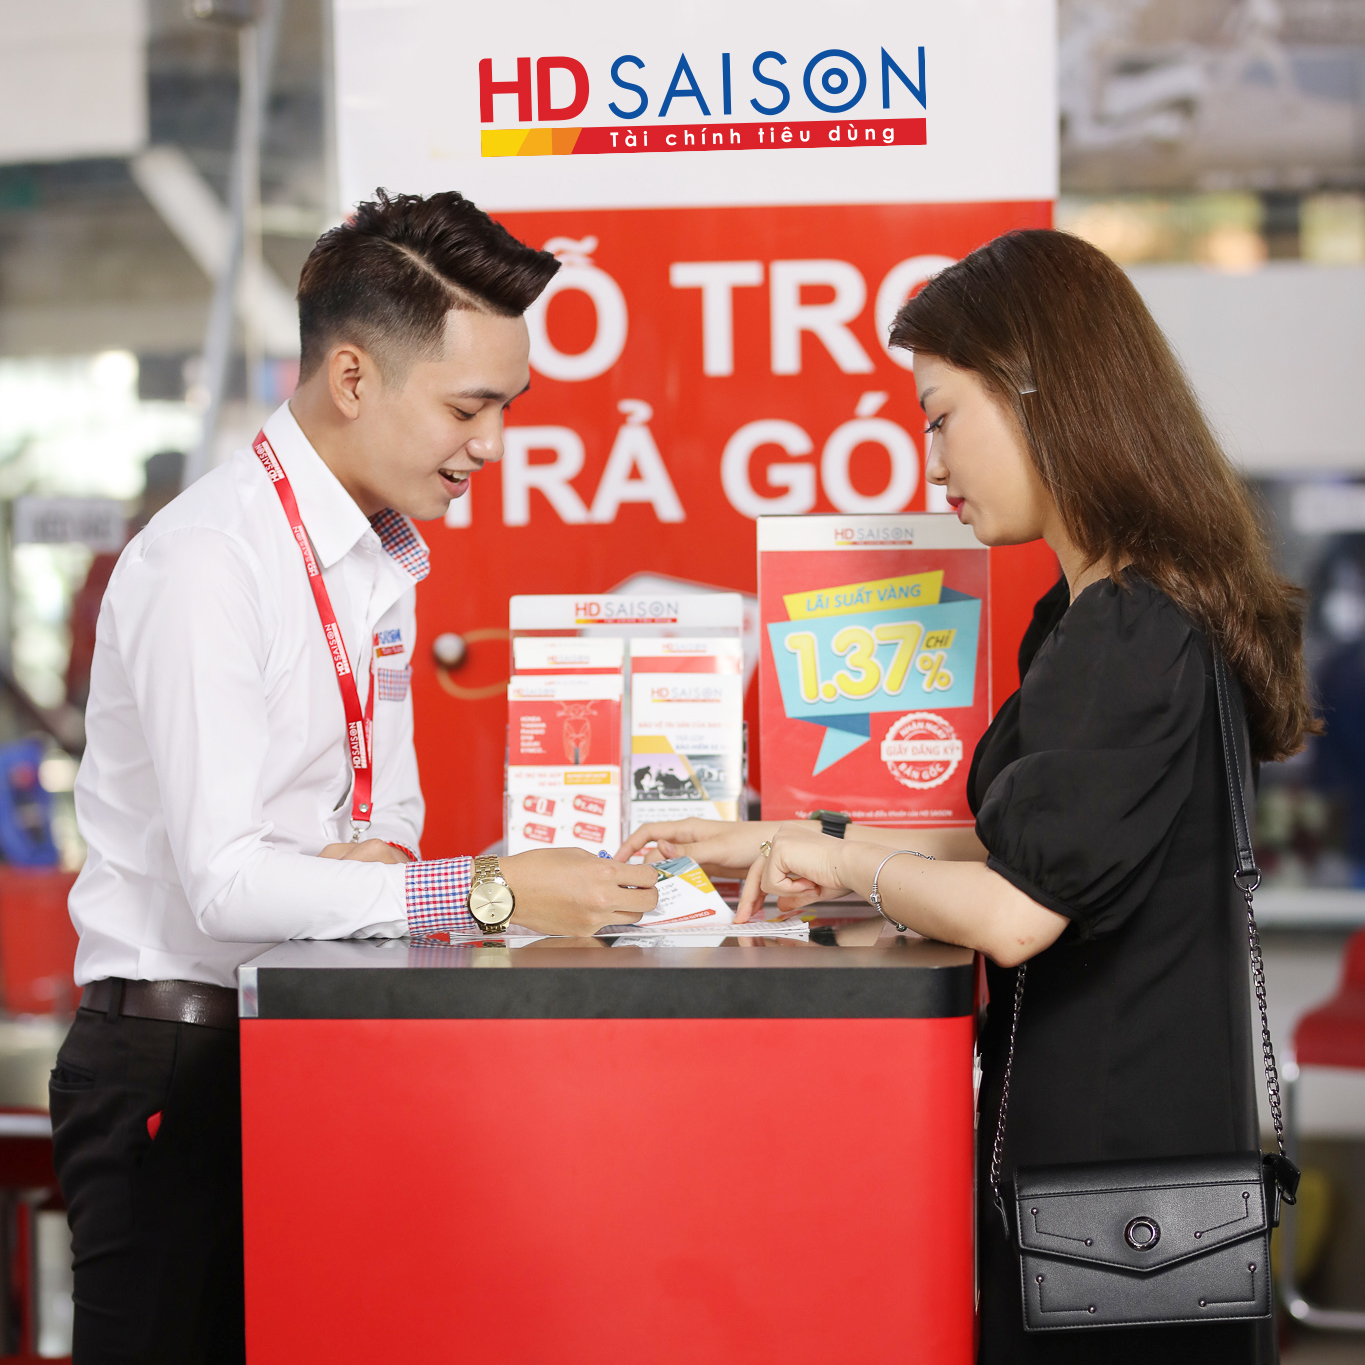 Vay tiêu dùng với HD SAISON, khách hàng nữ sẽ nhận được ưu đãi nhân đôi - Ảnh: HD SAISON